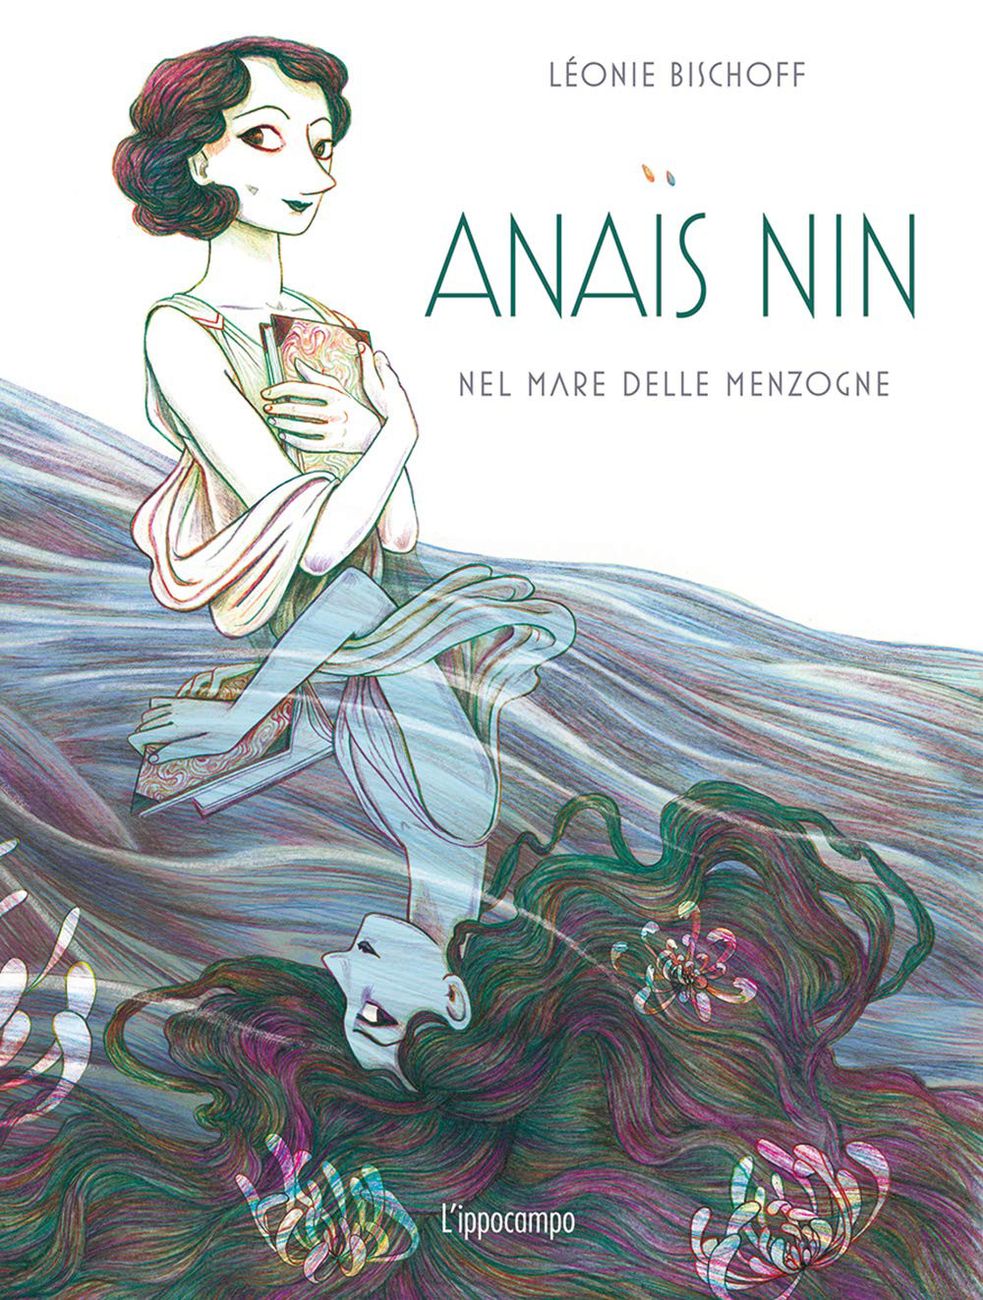 Léonie Bischoff – Anais Nin, nel mare delle menzogne (L'ippocampo, Milano 2021). Copertina